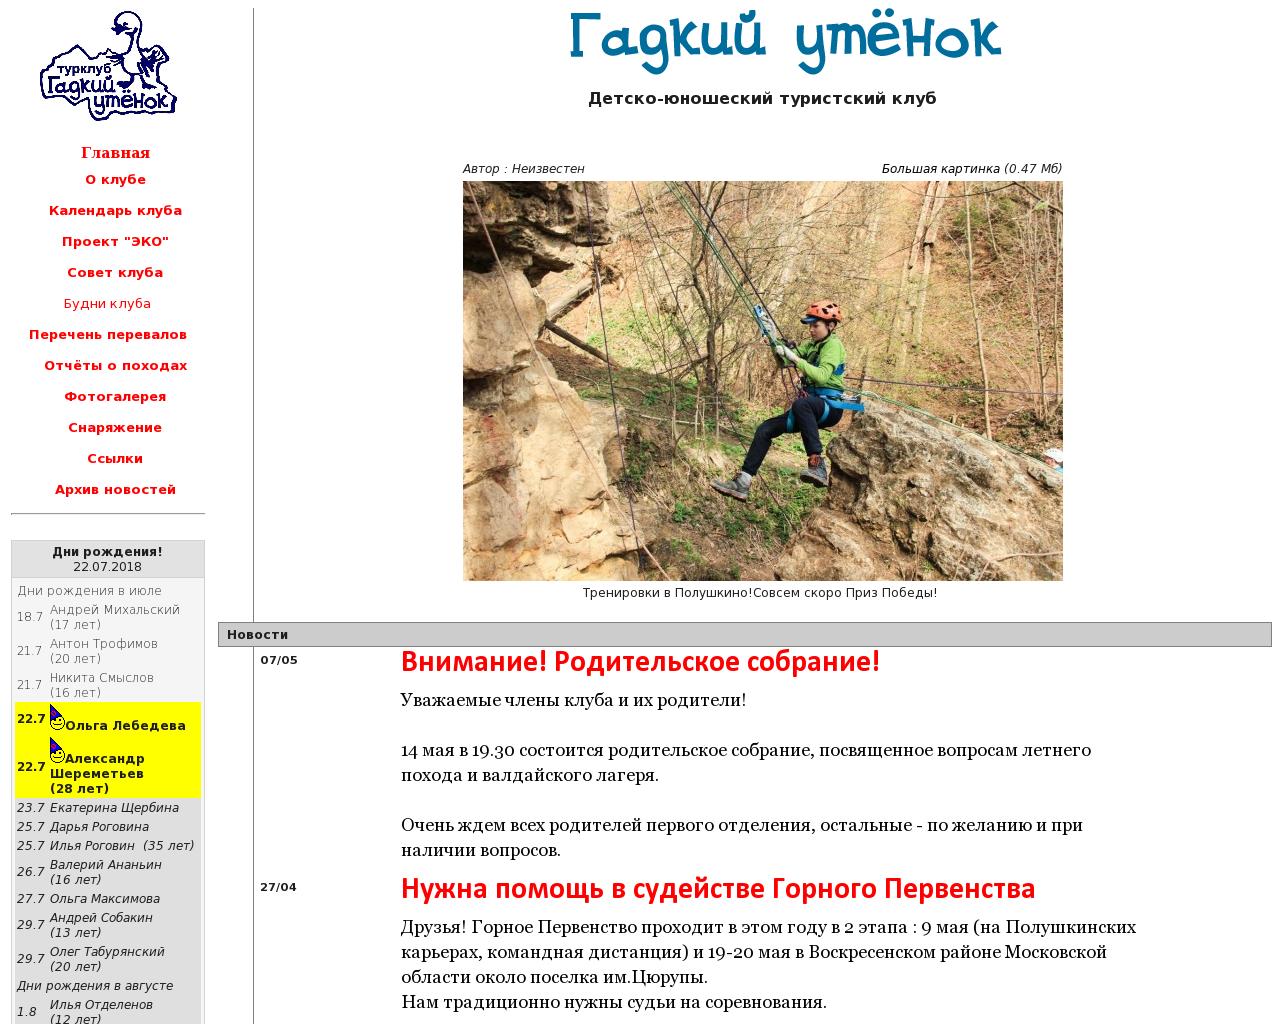 Изображение сайта g-utka.ru в разрешении 1280x1024